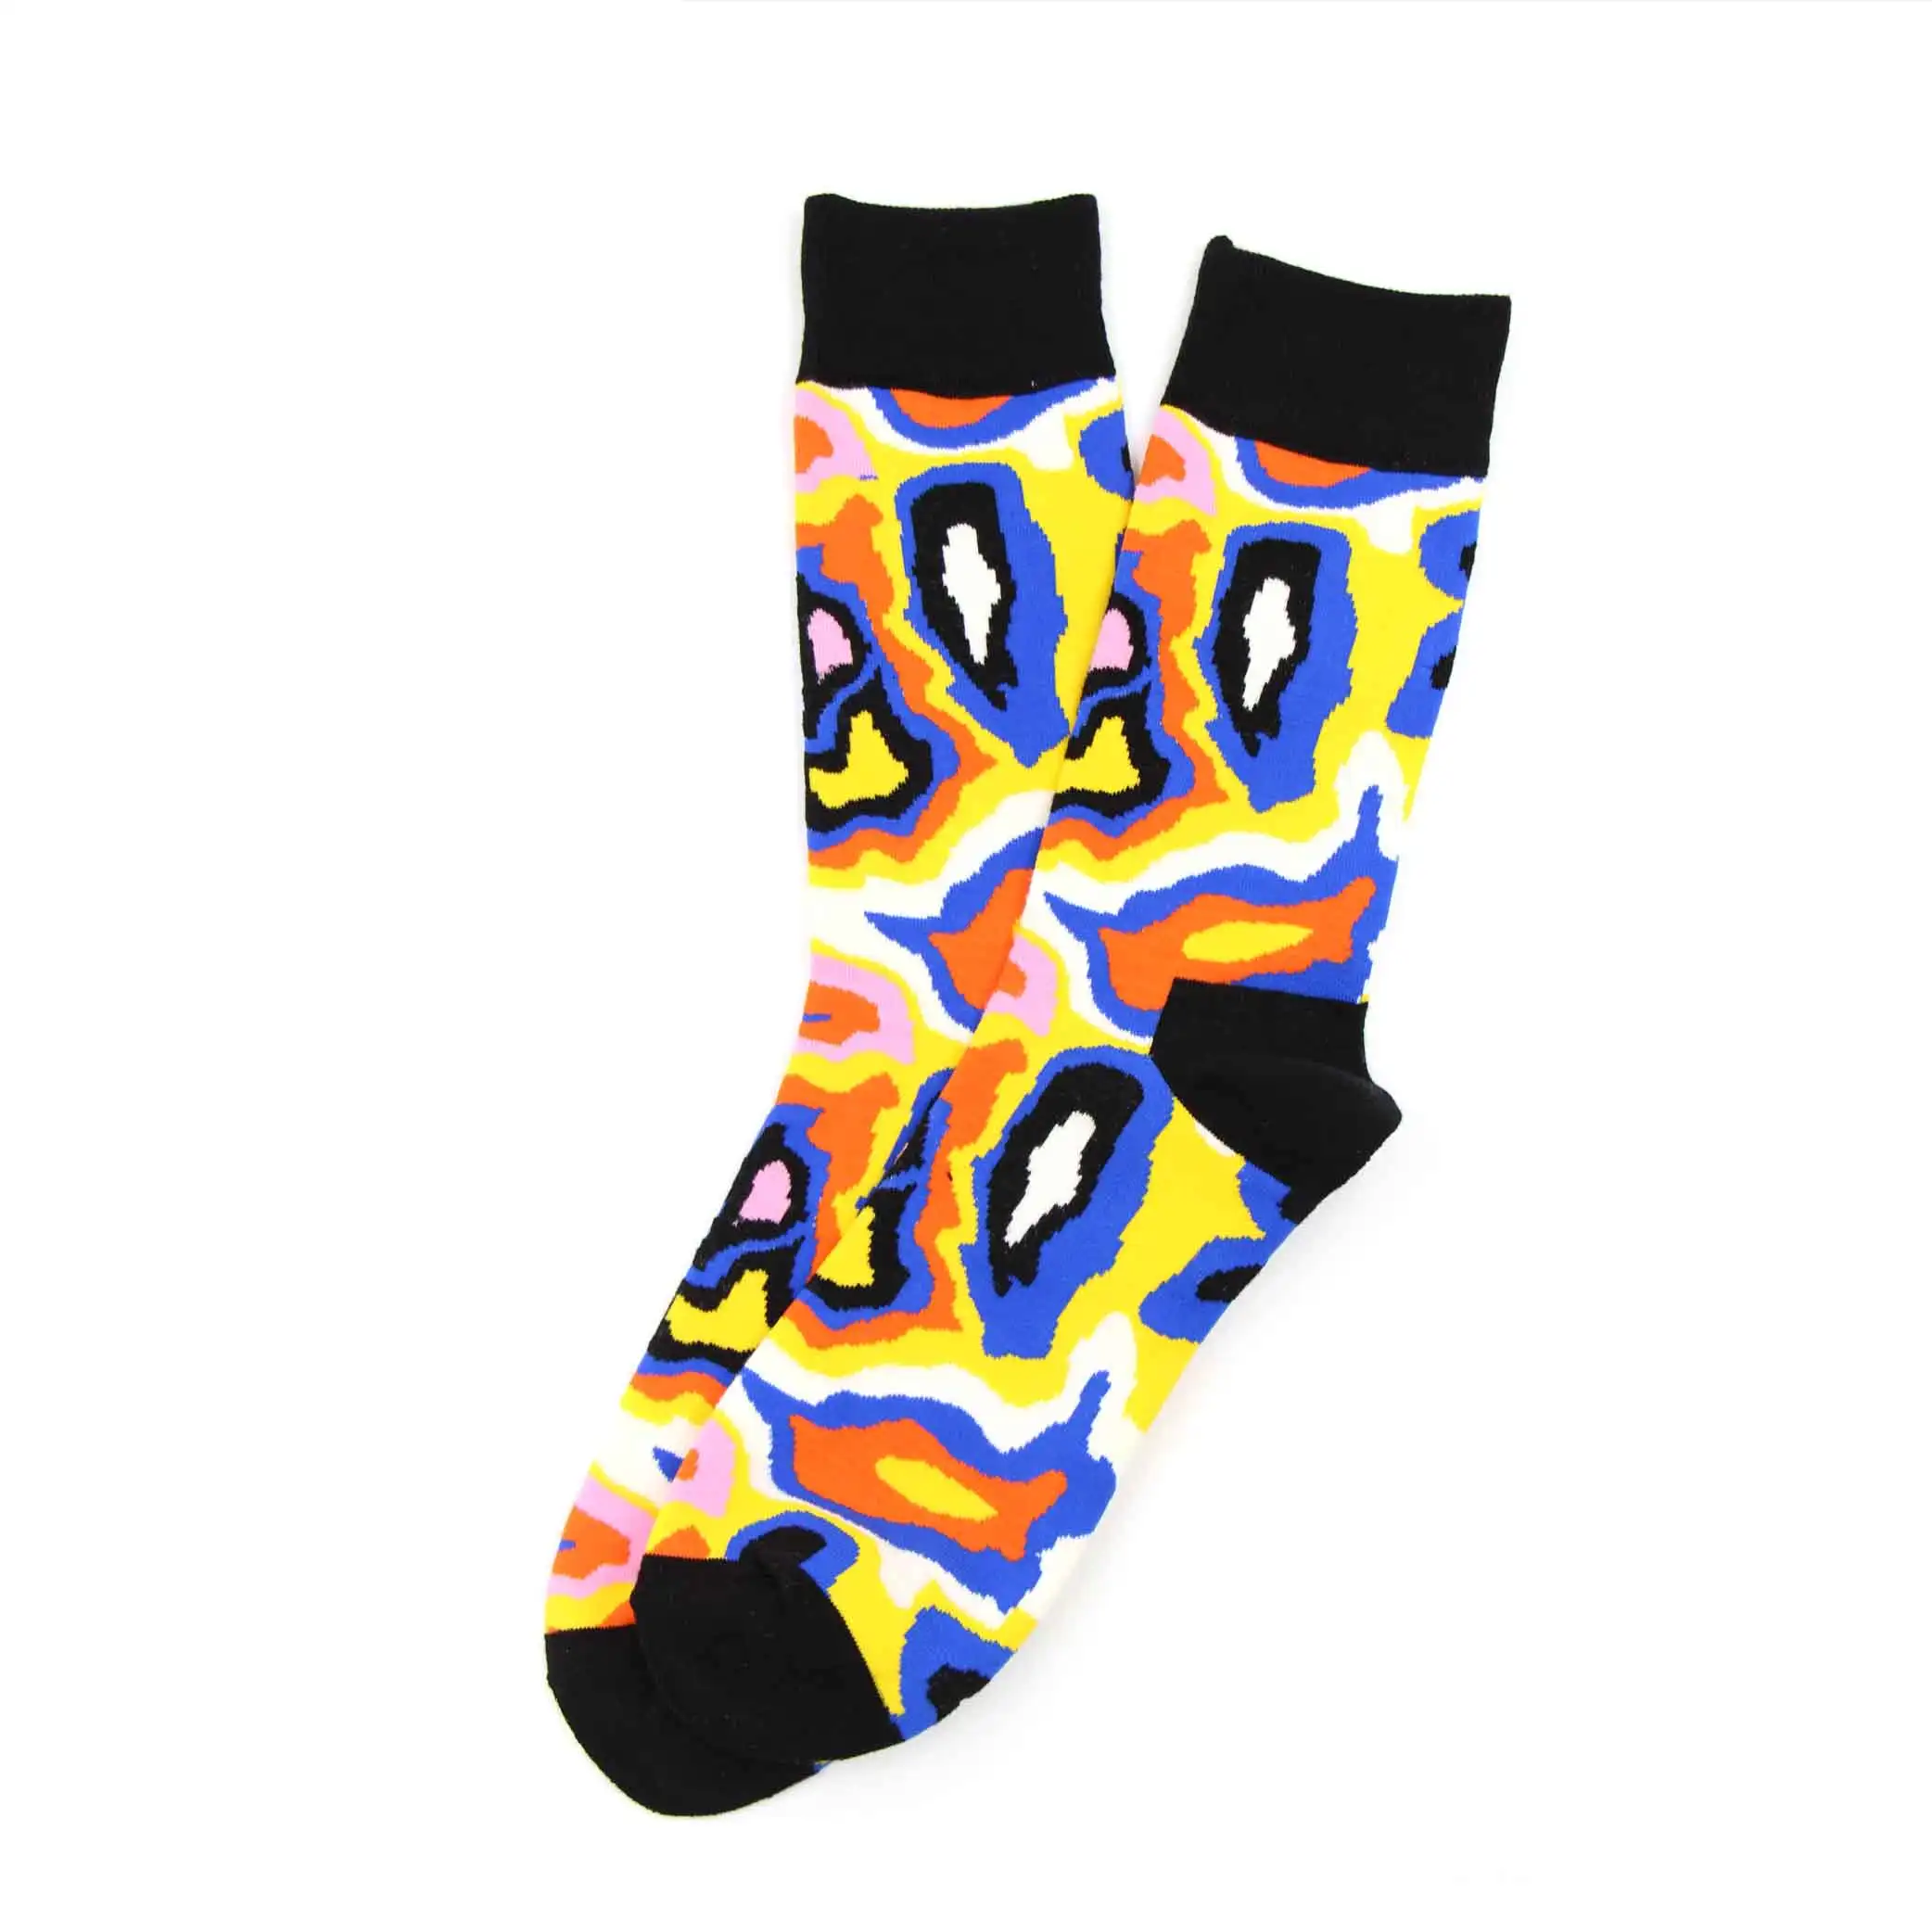 WH SOKKEN забавные мужские новые носки из чесаного хлопка шар с водородом компрессионный хип-хоп Повседневный стиль для новинок подарки 25 цветов